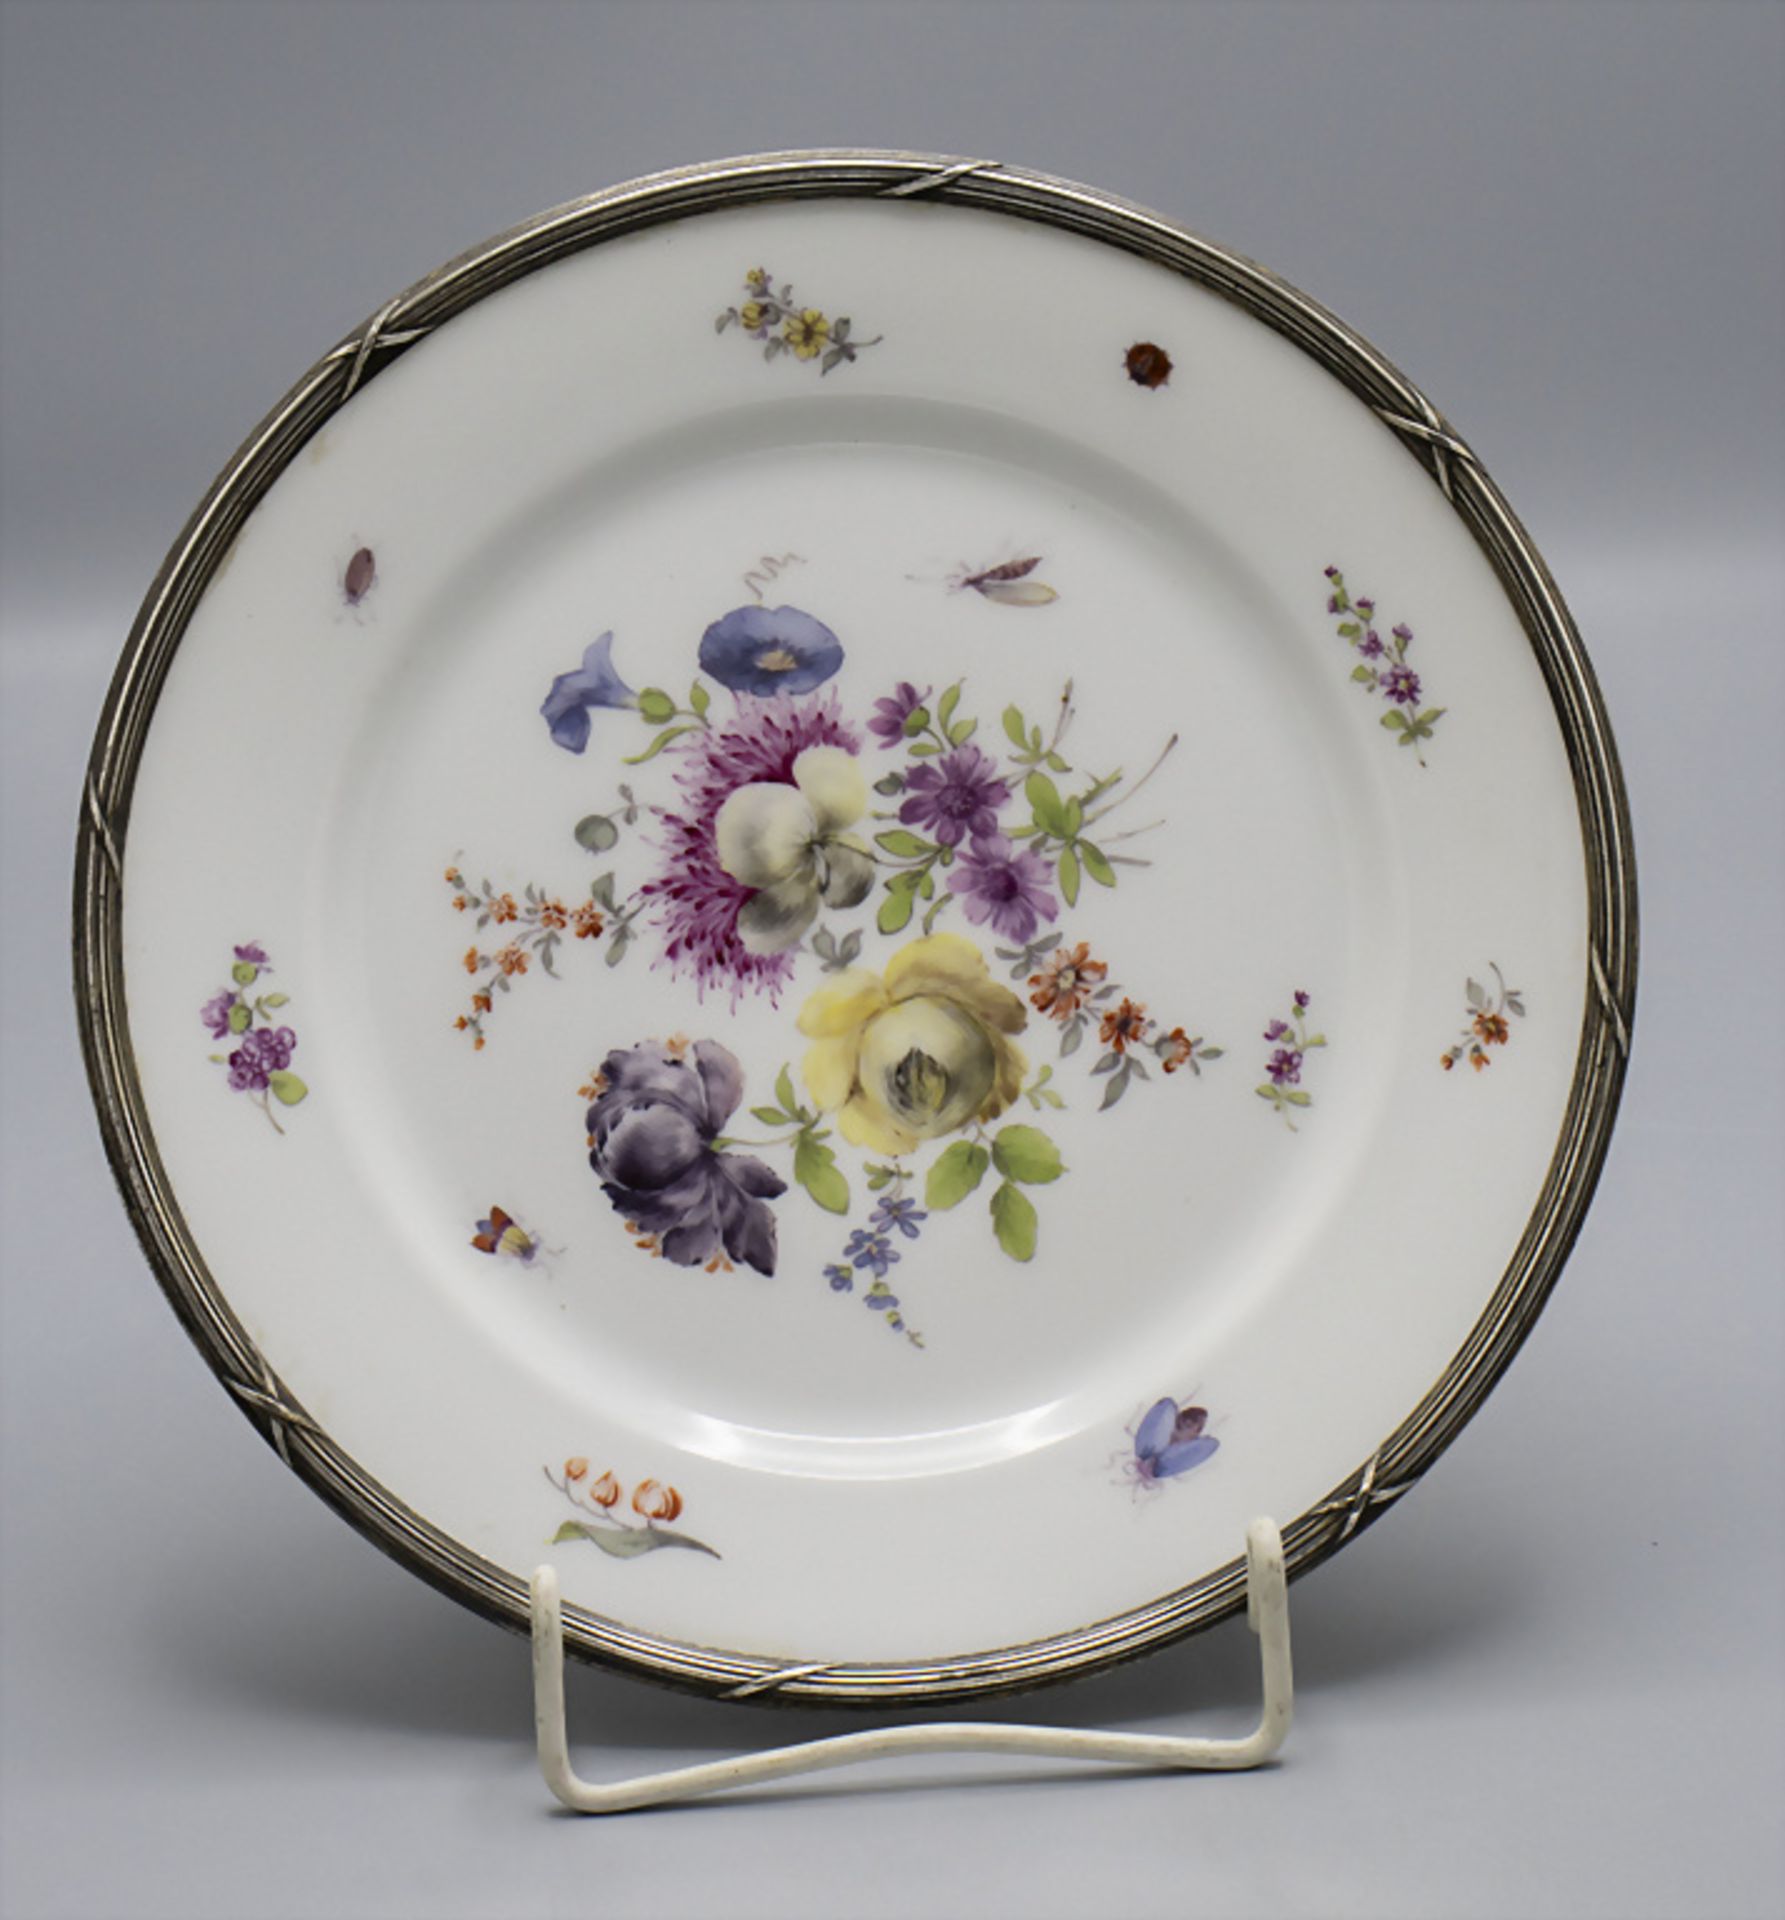 Teller mit Blumenbouquet und Silbermontur / A plate with flowers and a silver mount, Paris, um 1880